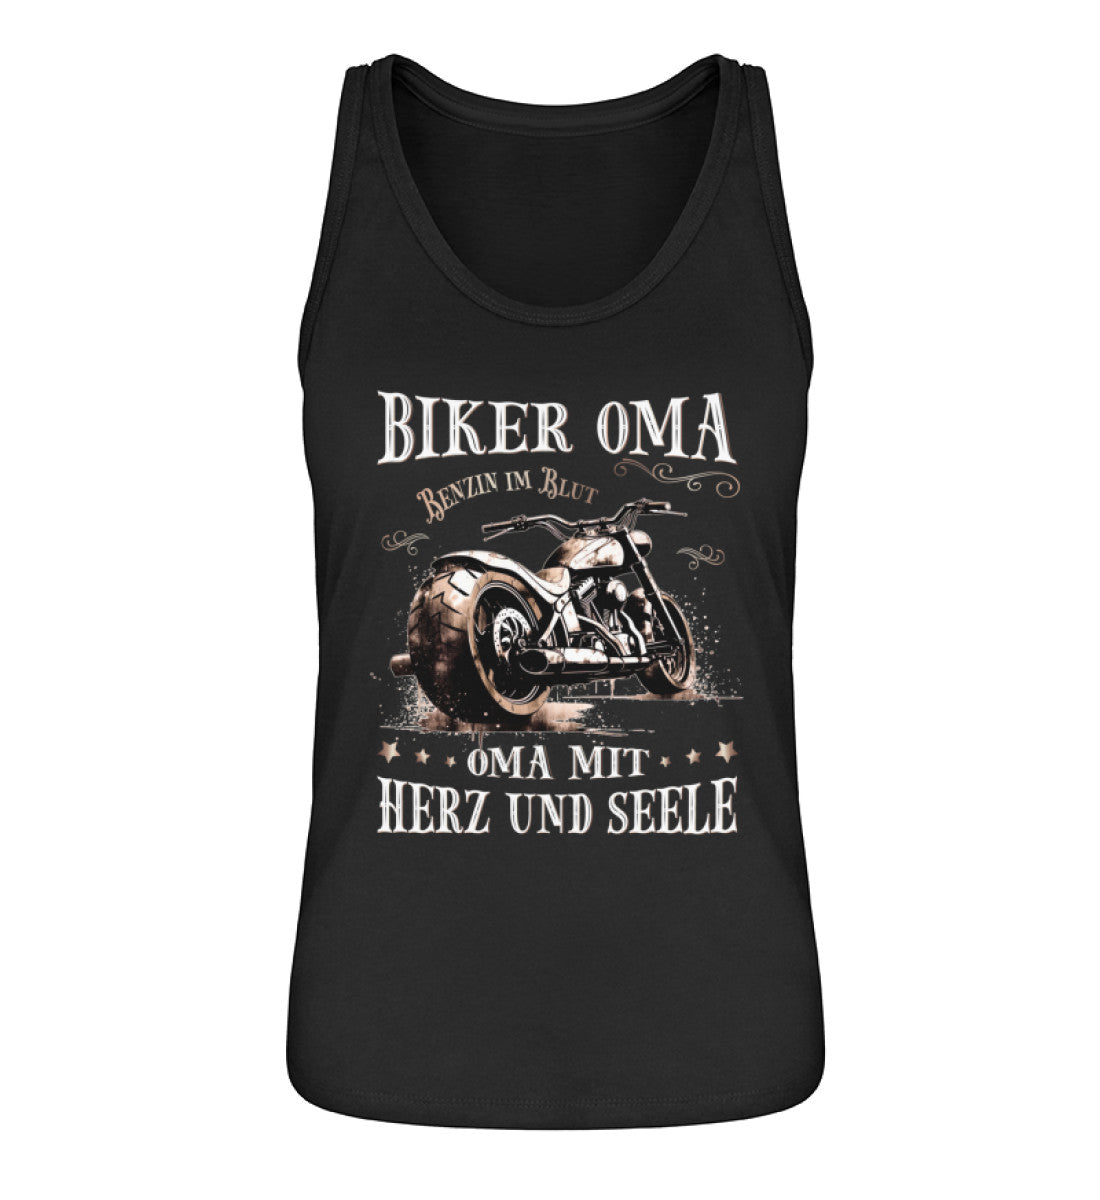 Ein Tanktop für Motorradfahrerinnen von Wingbikers mit dem Aufdruck, Biker Oma - Benzin im Blut - Oma mit Herz und Seele, in schwarz.